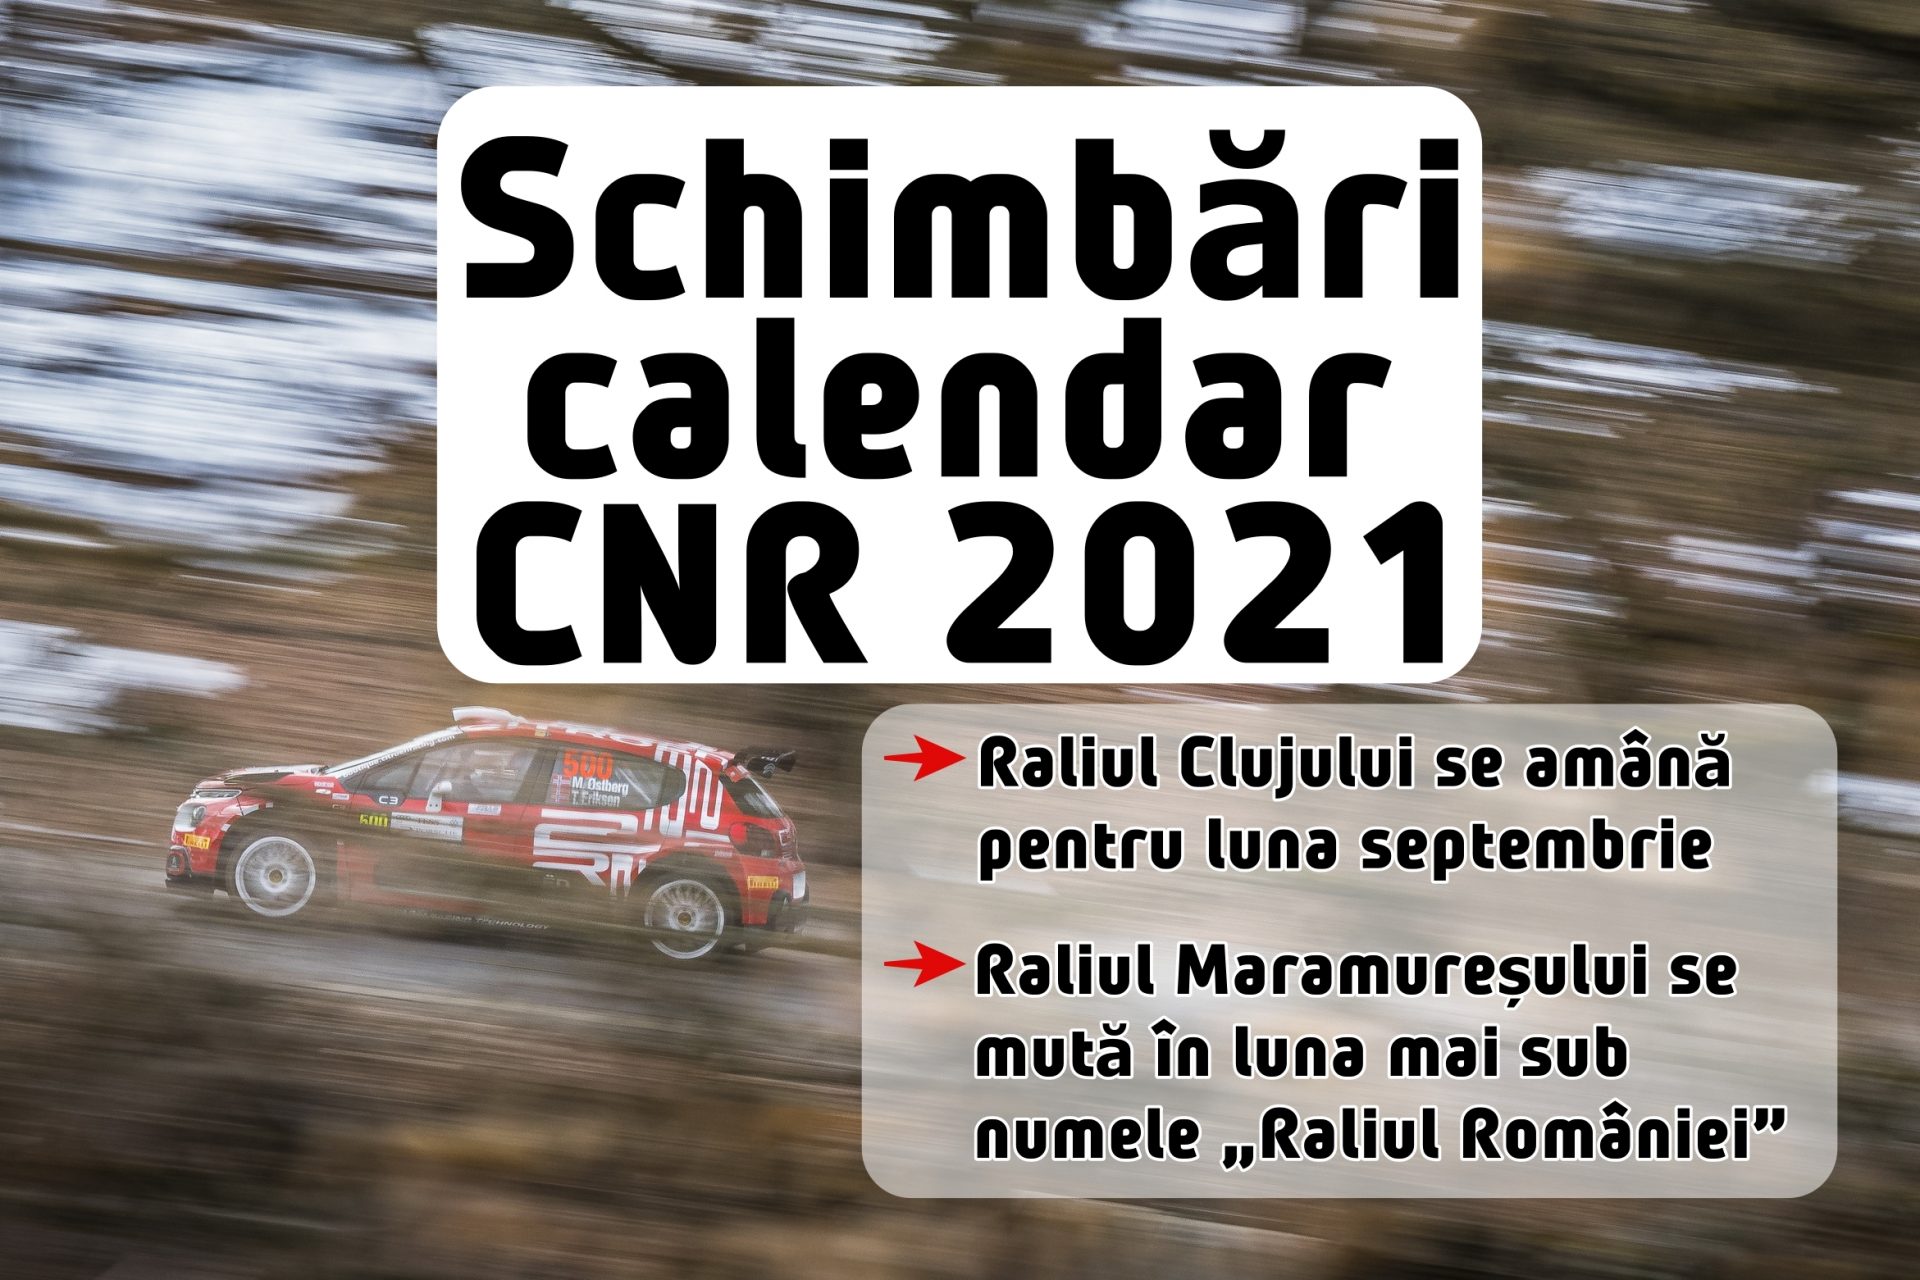 Schimbări de calendar în CNR 2021: Raliul Clujului amânat, Raliul Maramureșului devansat